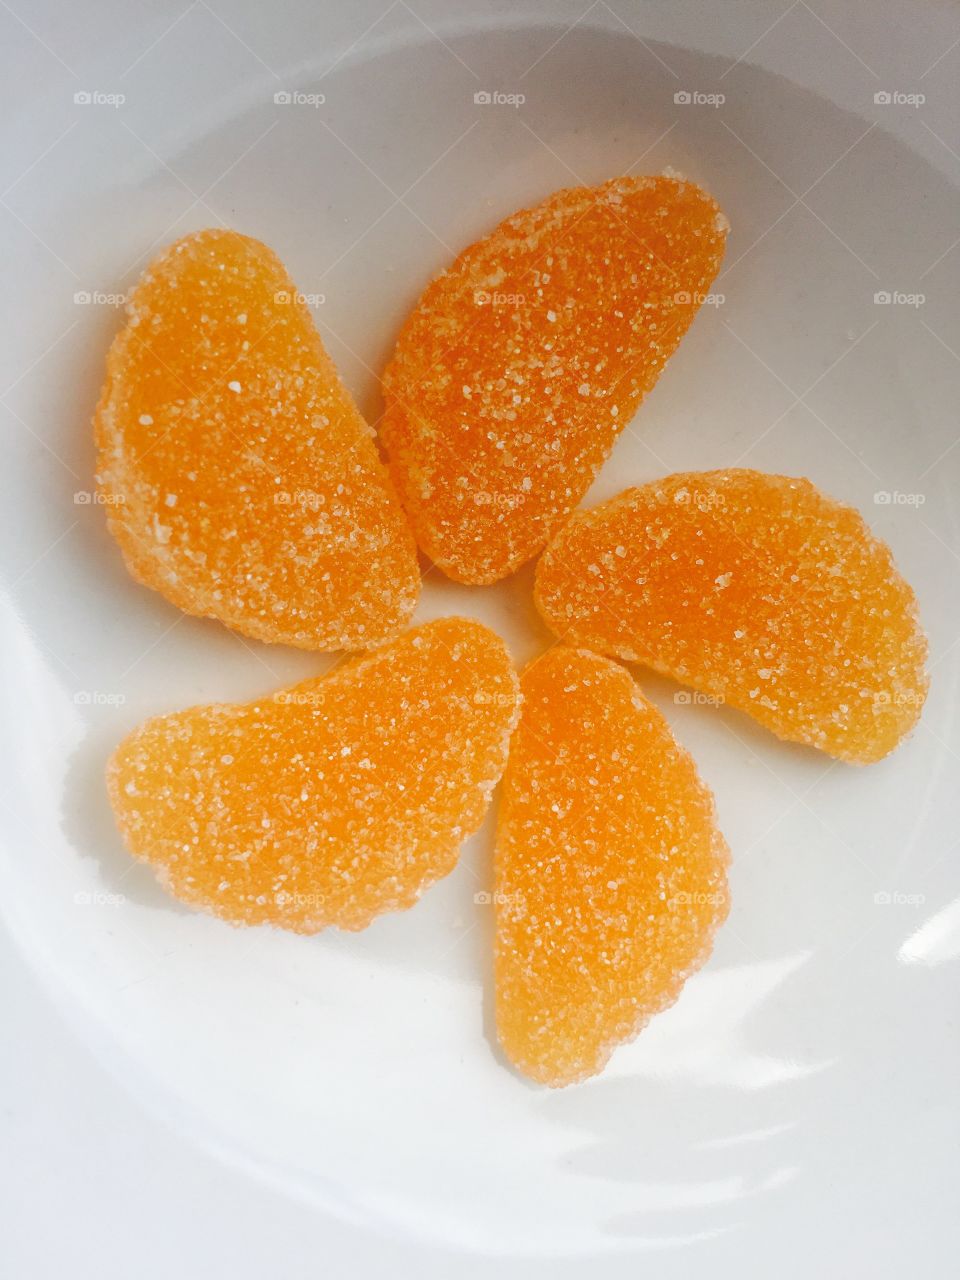 Sweet Orange slices